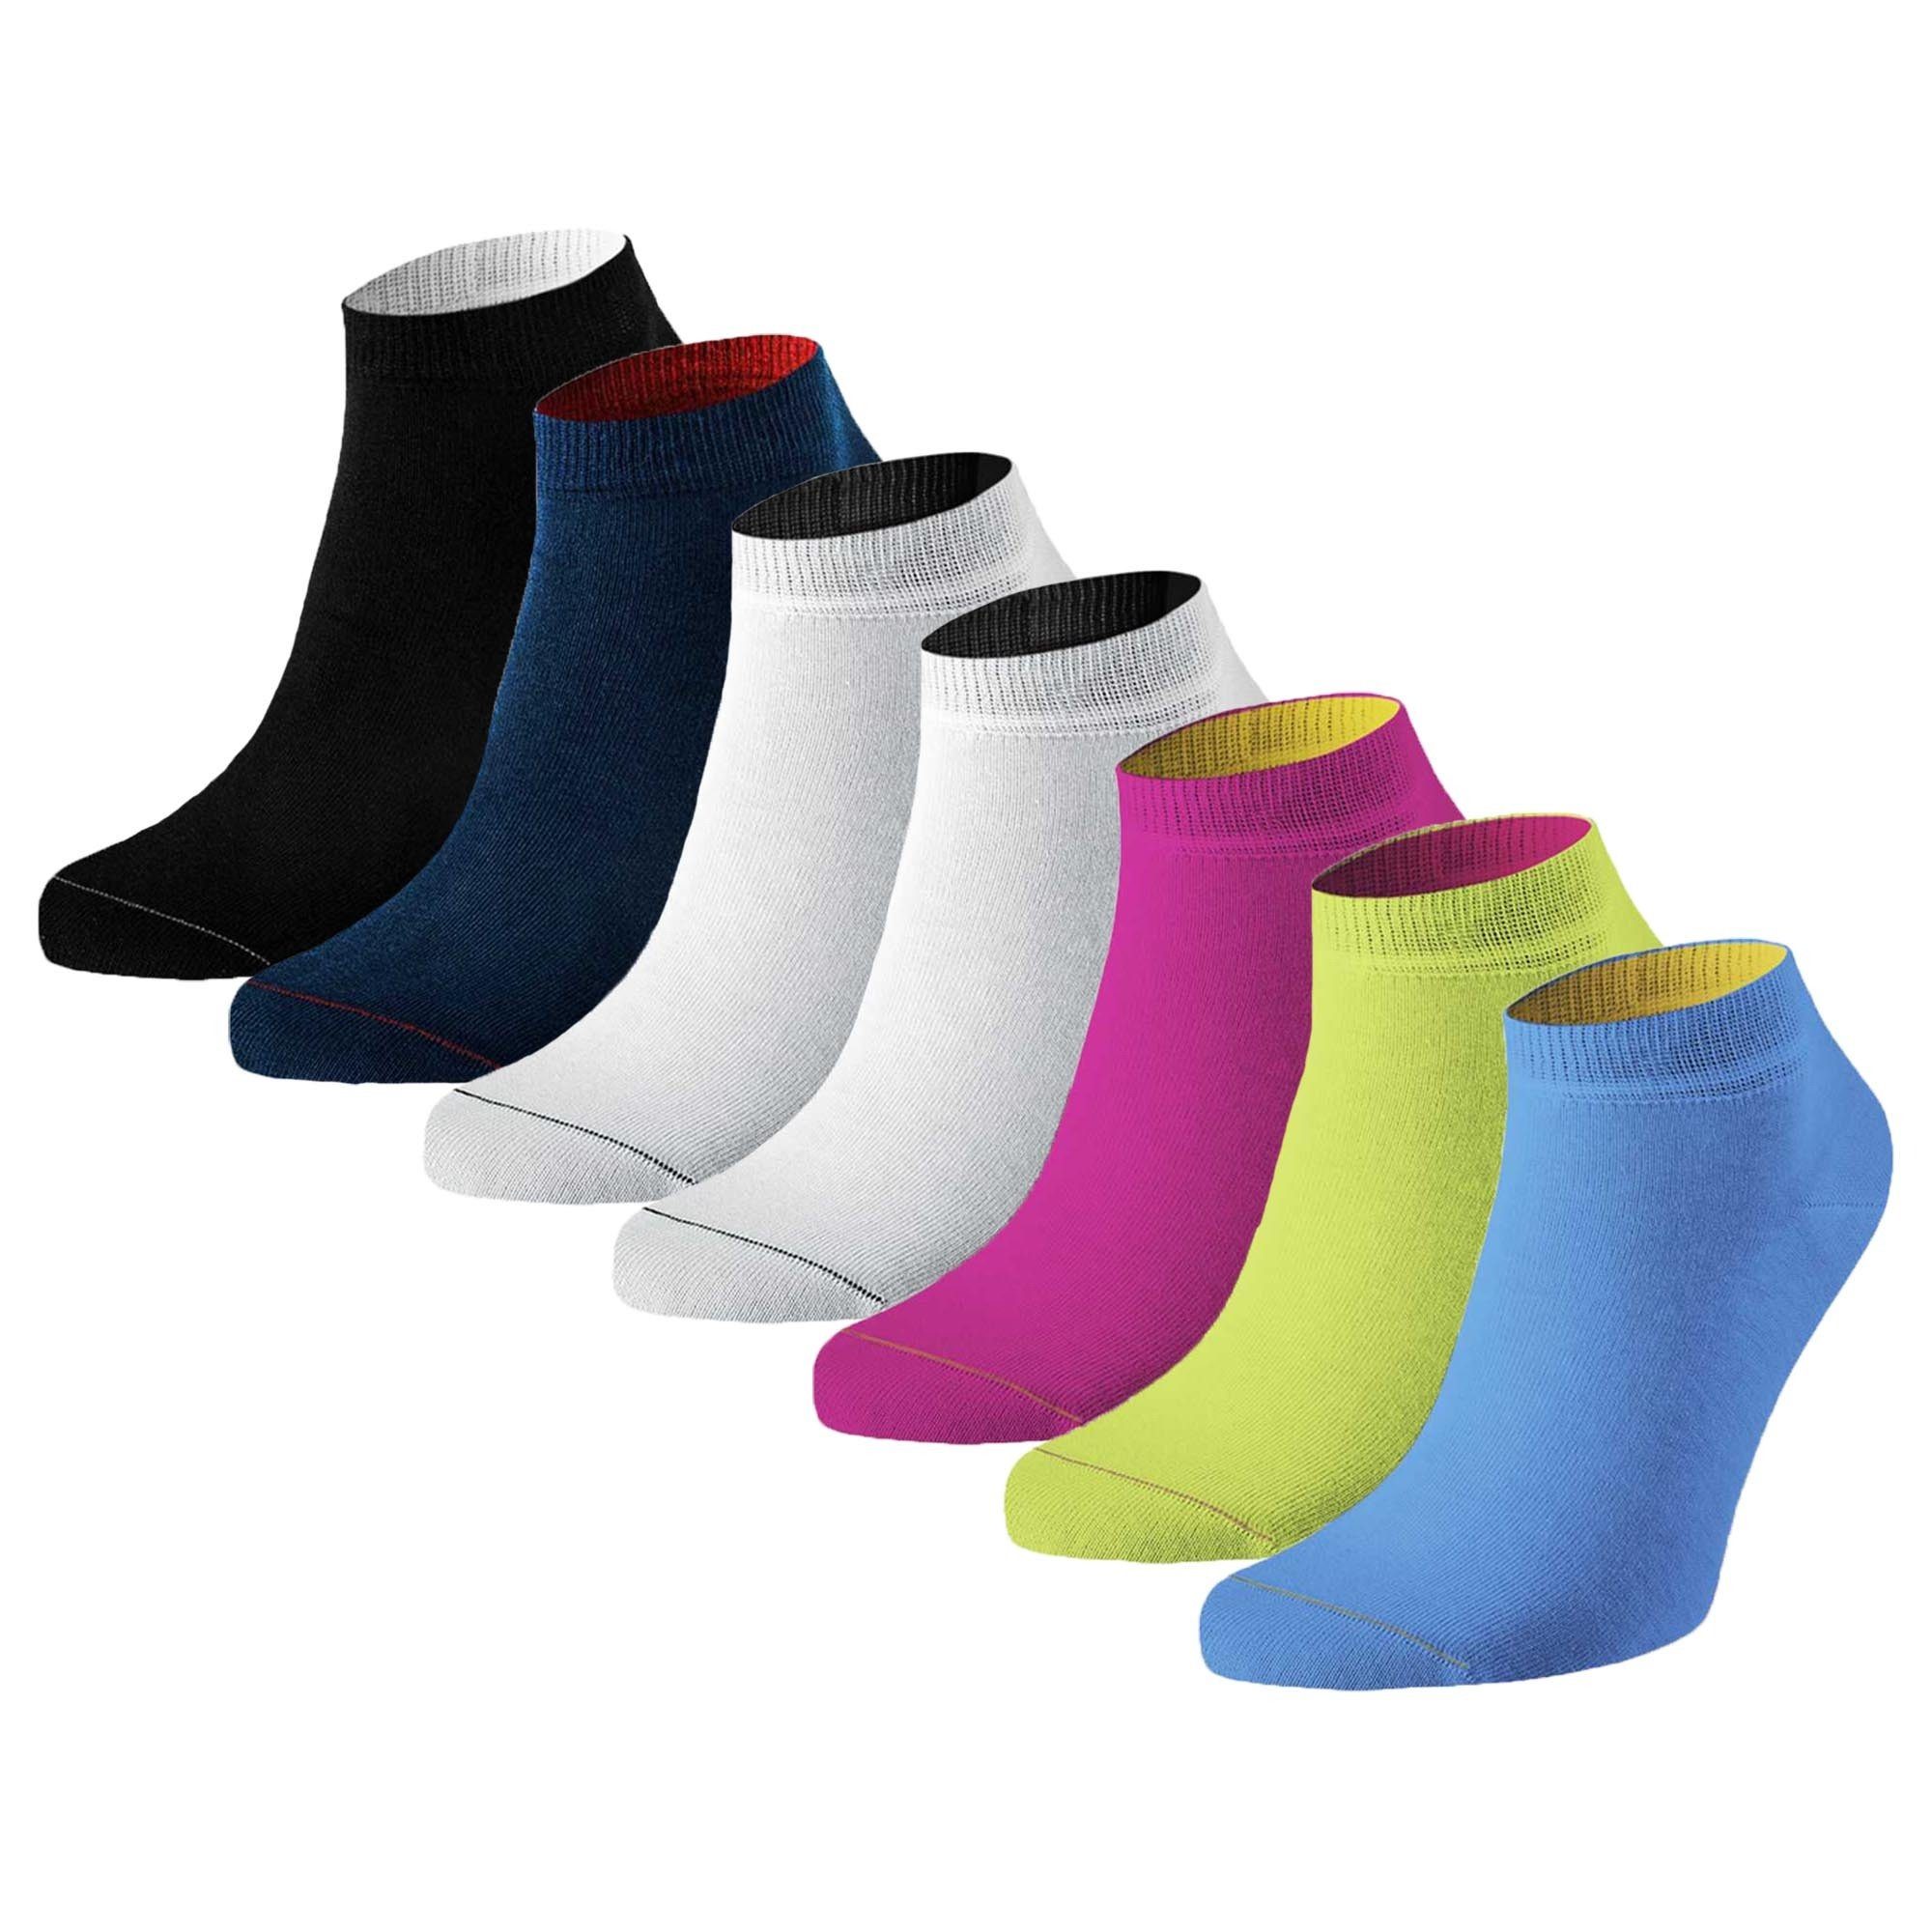 von Jungfeld Sneakersocken Herren Sneaker Socken, 7er Pack - Farbenfroh